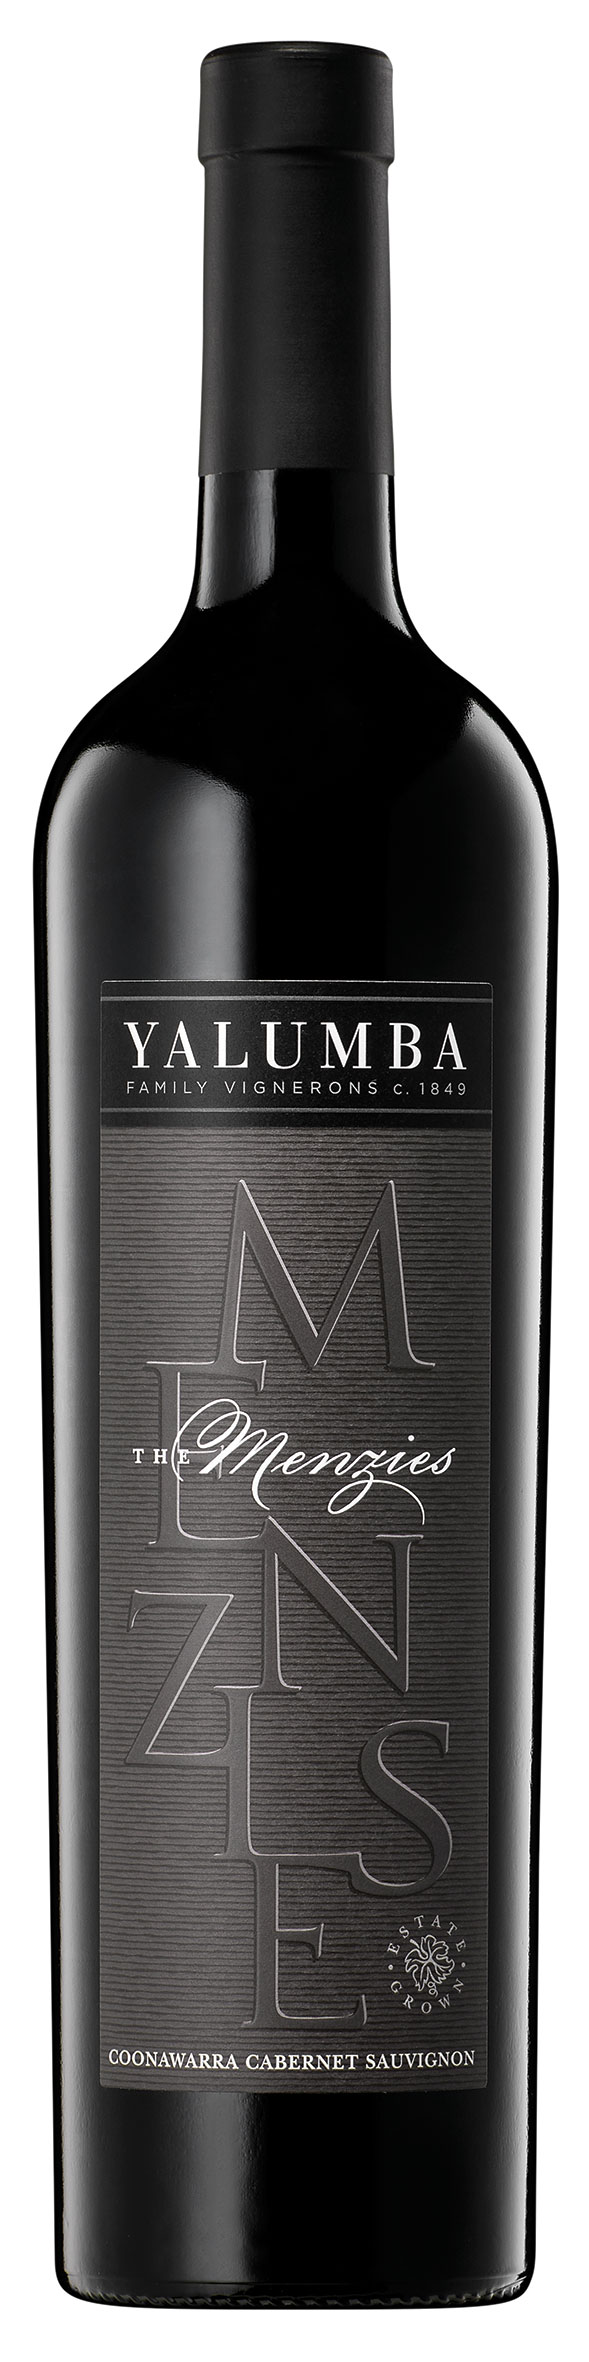 Yalumba The Menzies Cabernet Sauvignon 2015